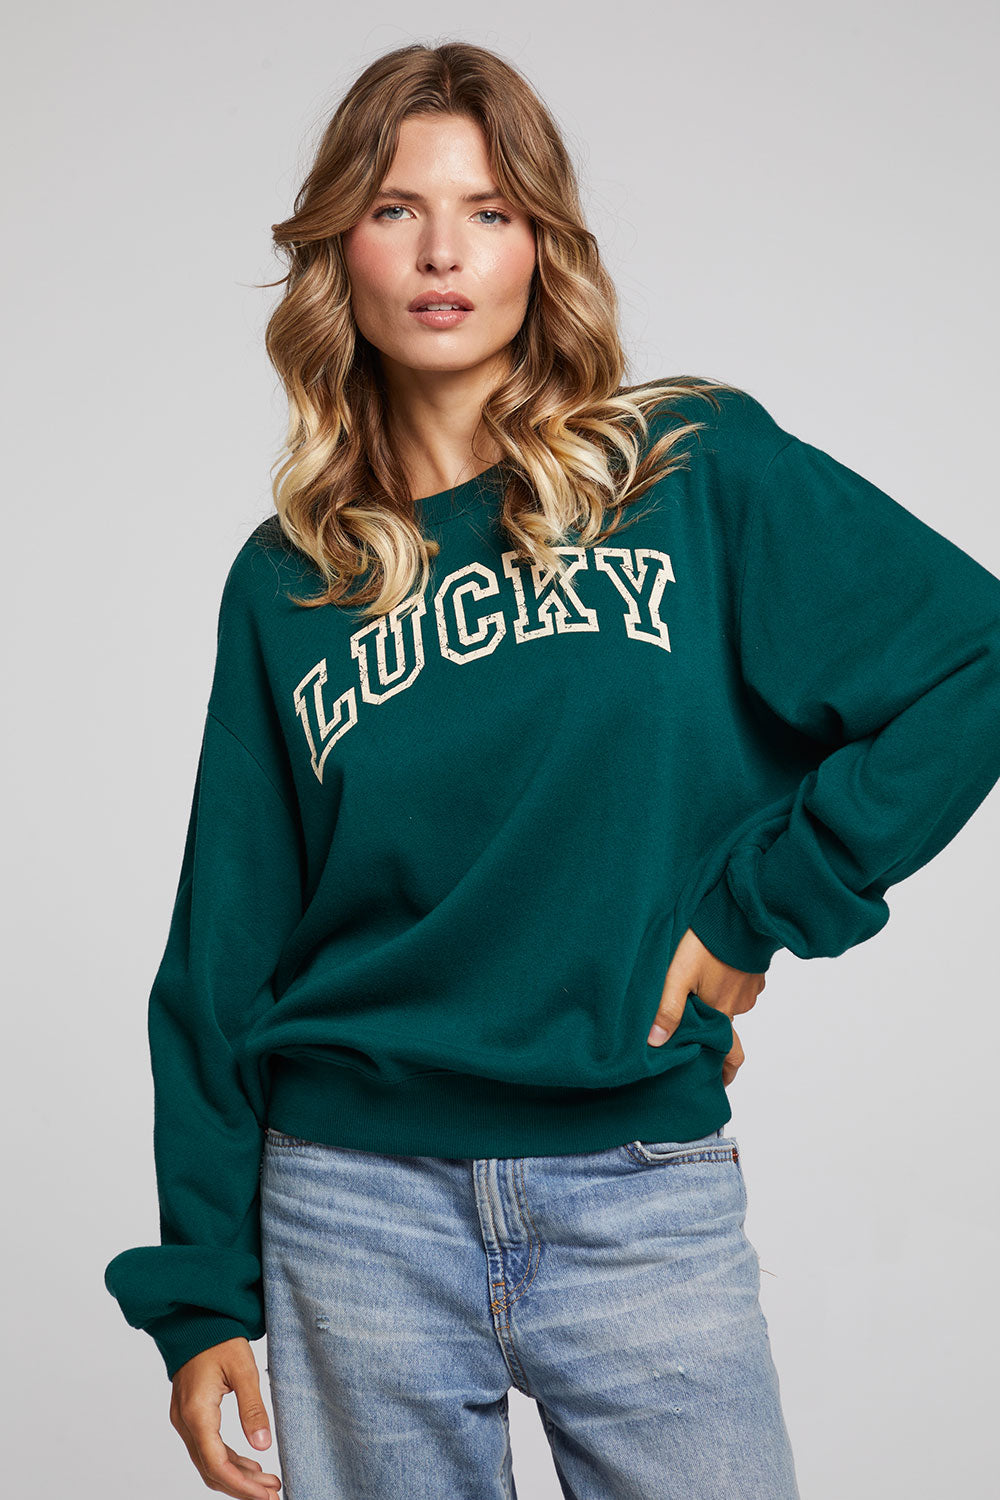 Lucky Brand Women's Green T-shirts